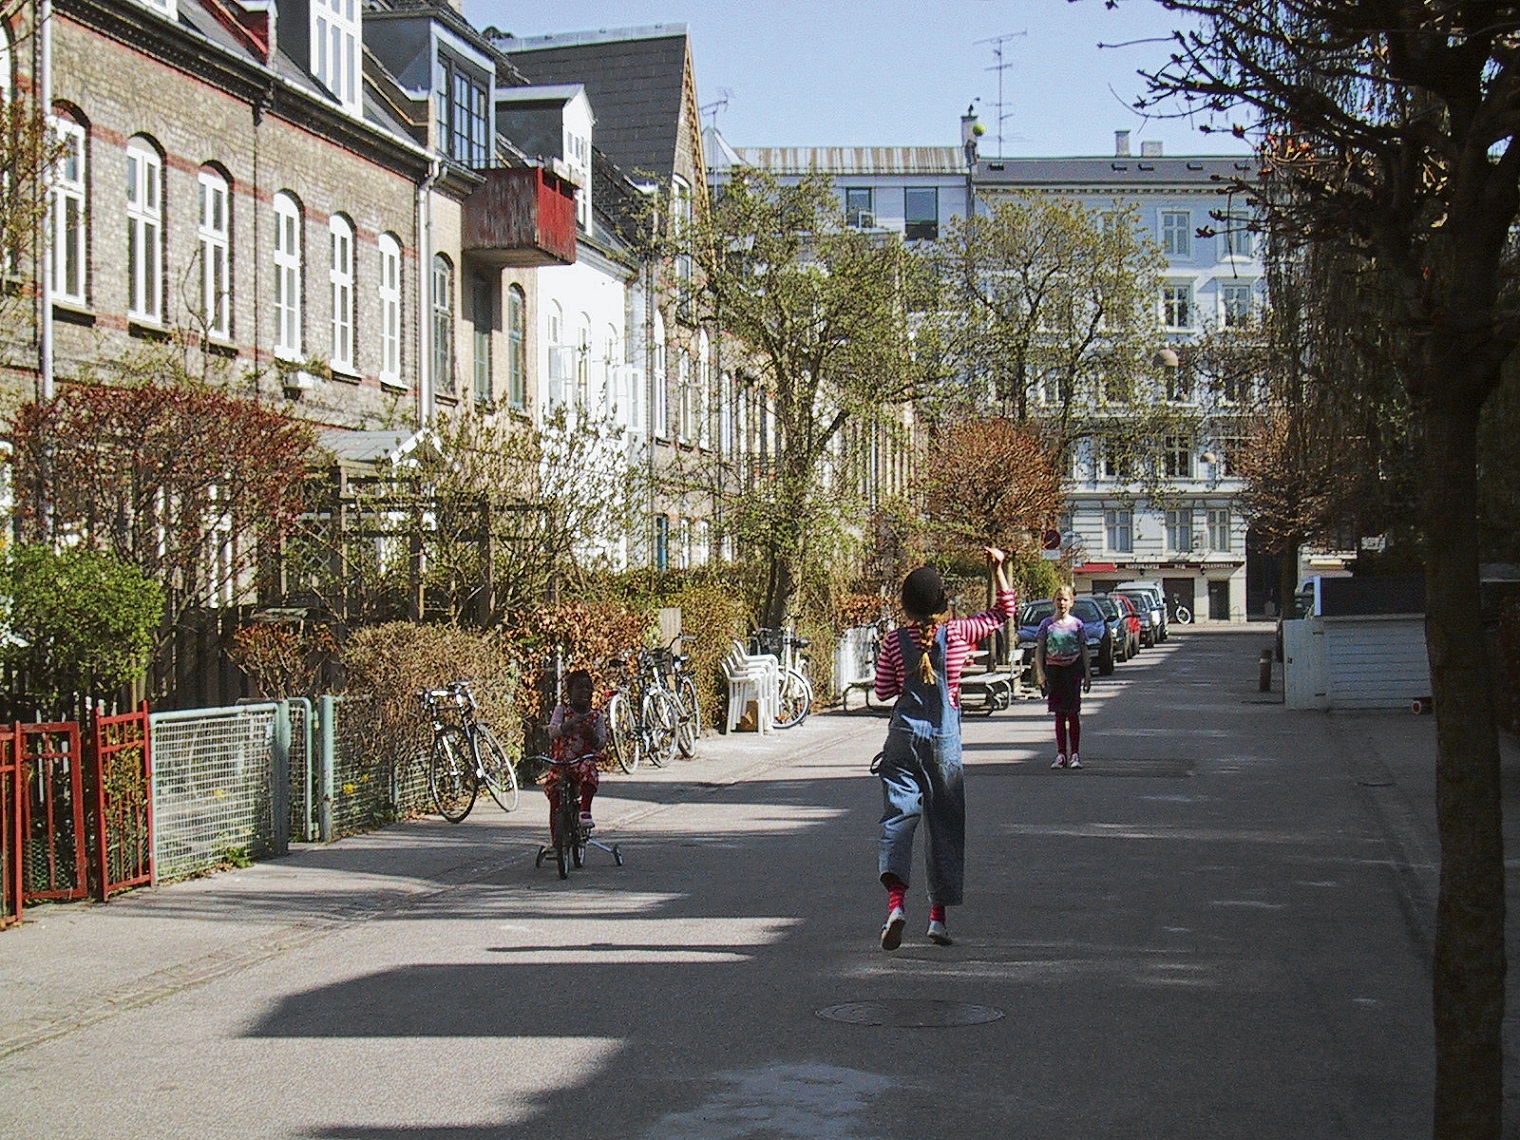 Reihenhäuse in Kopenhagen aus dem Buch Städte für Menschen von Jan Gehl